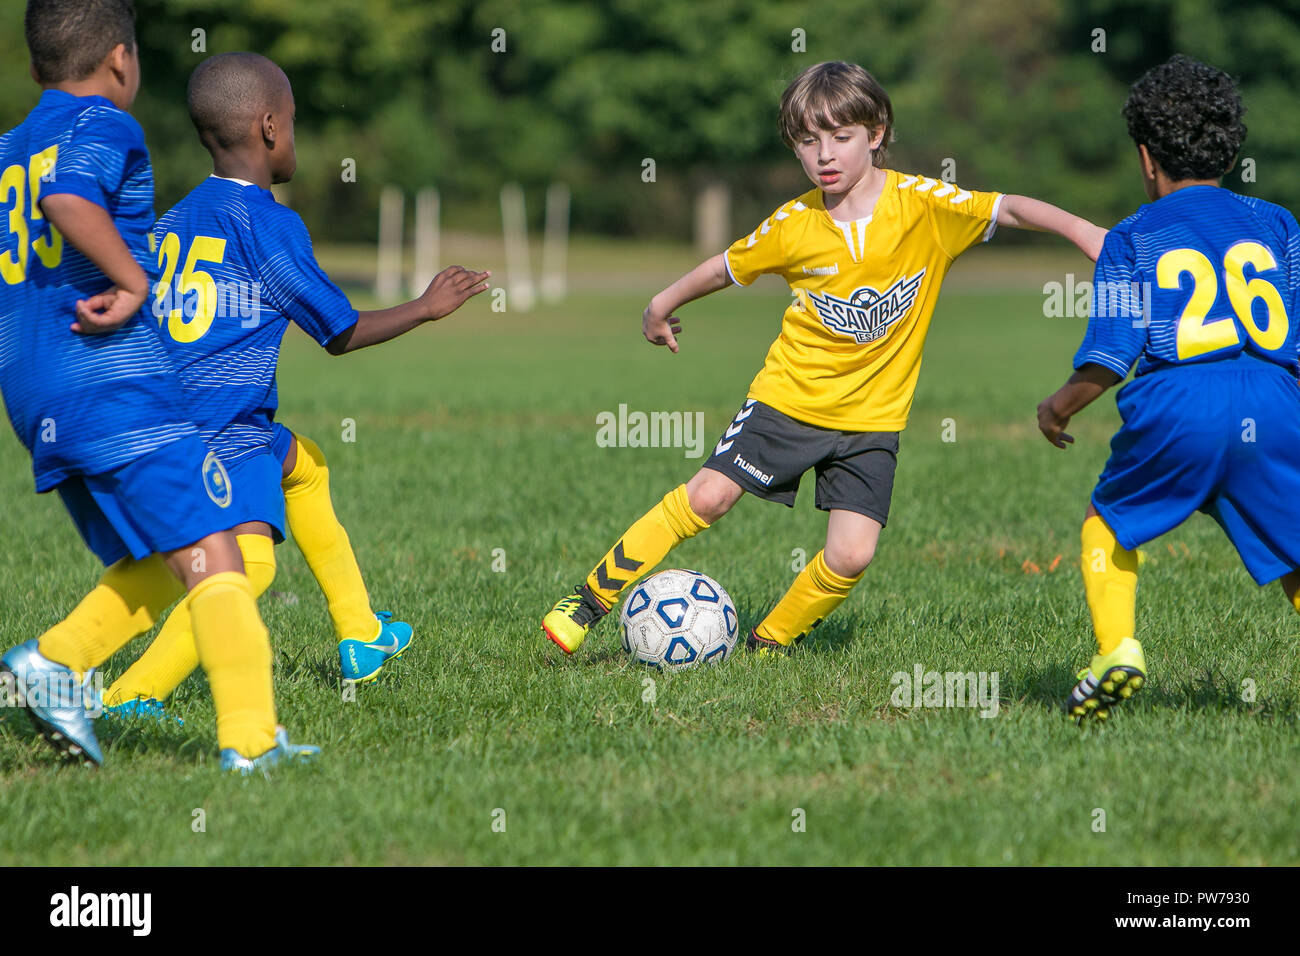 New York, September 29, 2018: 7 und 8 Jahre alten Jungen spielen eine Liga Fussball Spiel. Stockfoto